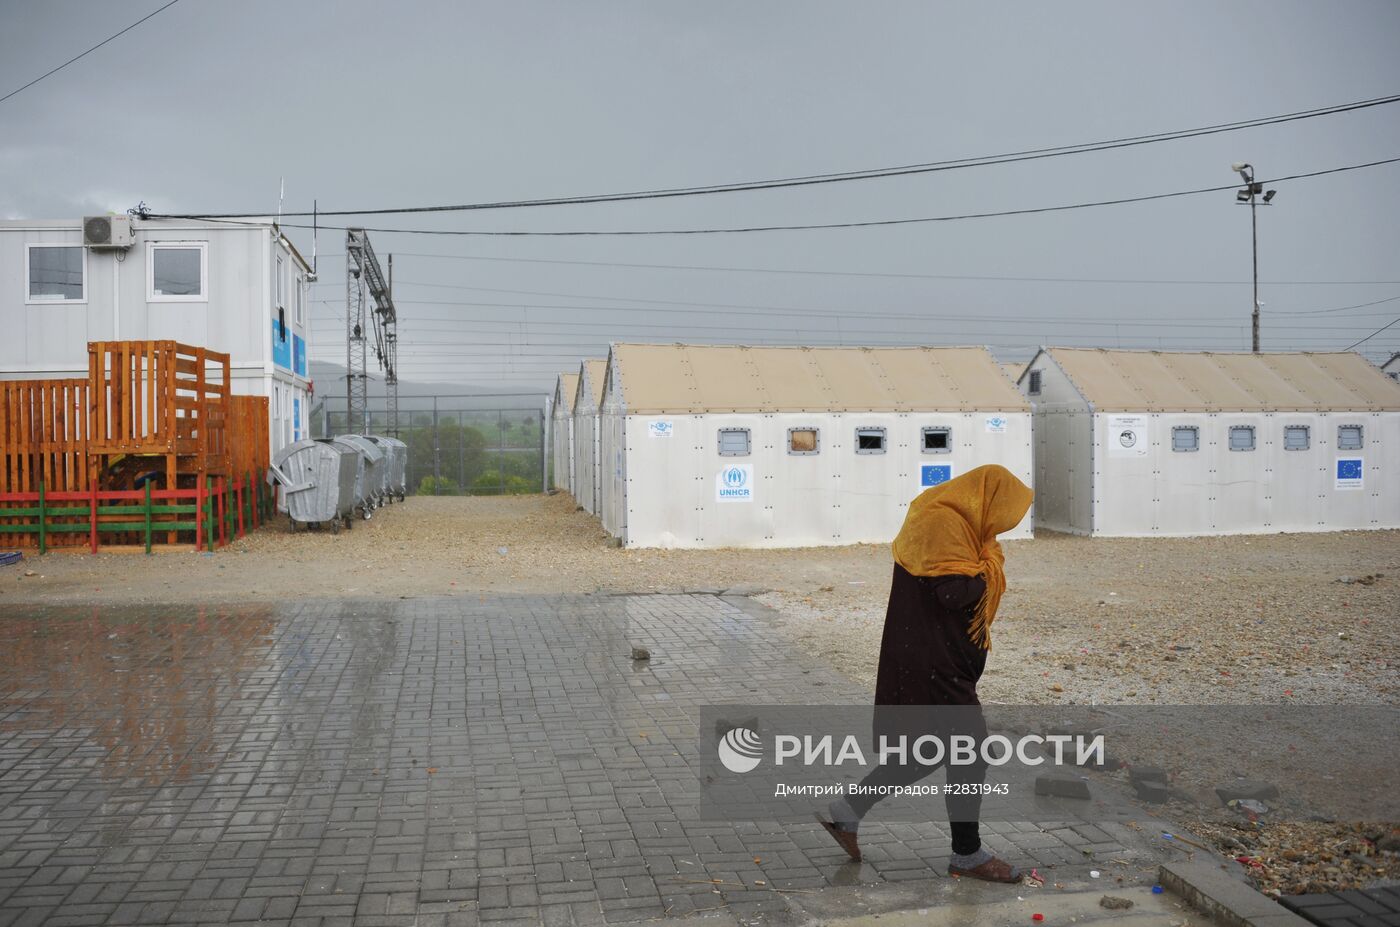 Лагерь беженцев "Табановце" в Македонии около македоно-сербской границы